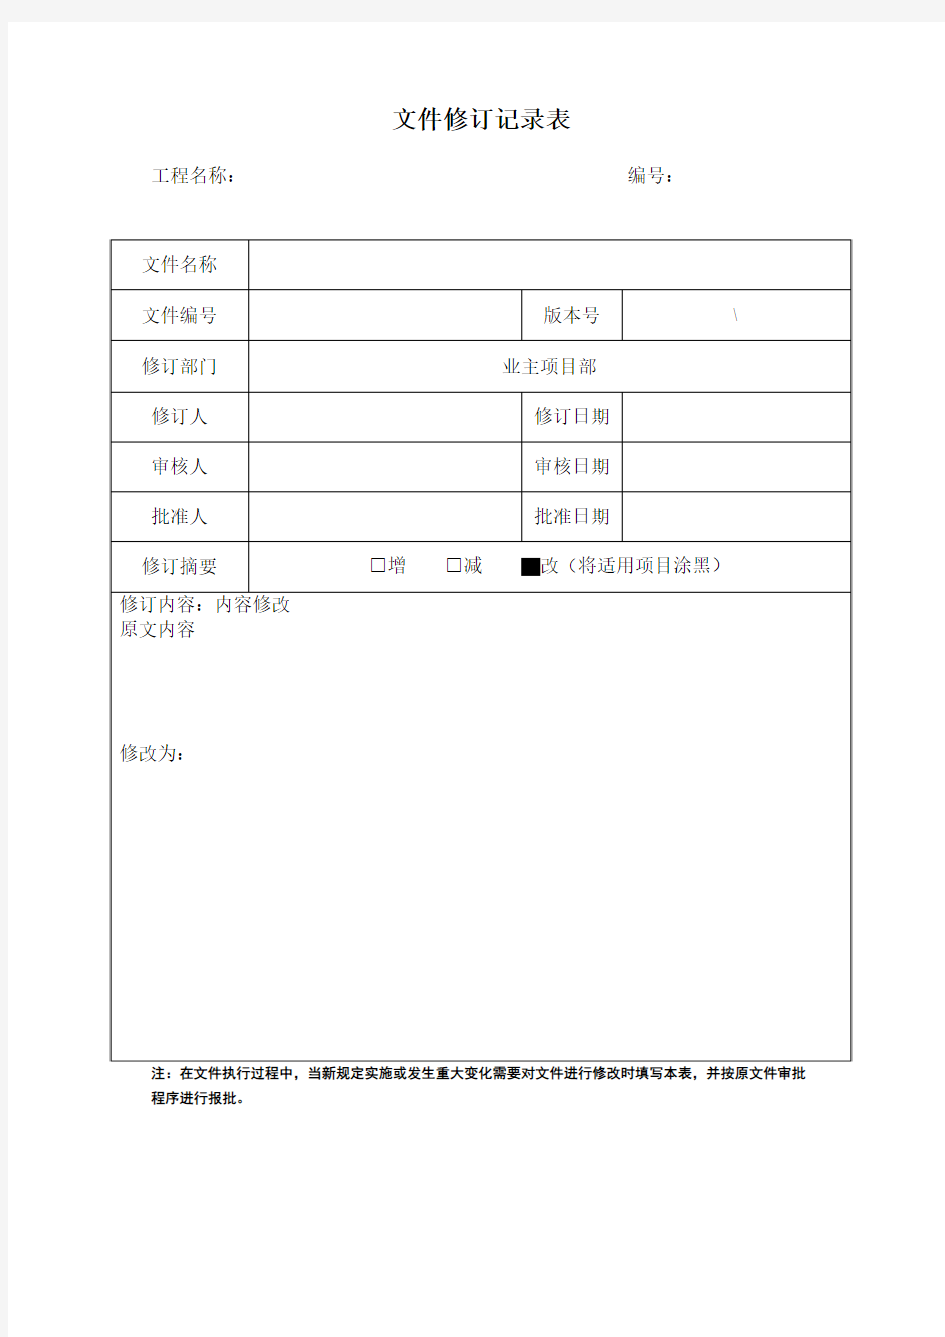 国网公司文件修订记录表(模板)